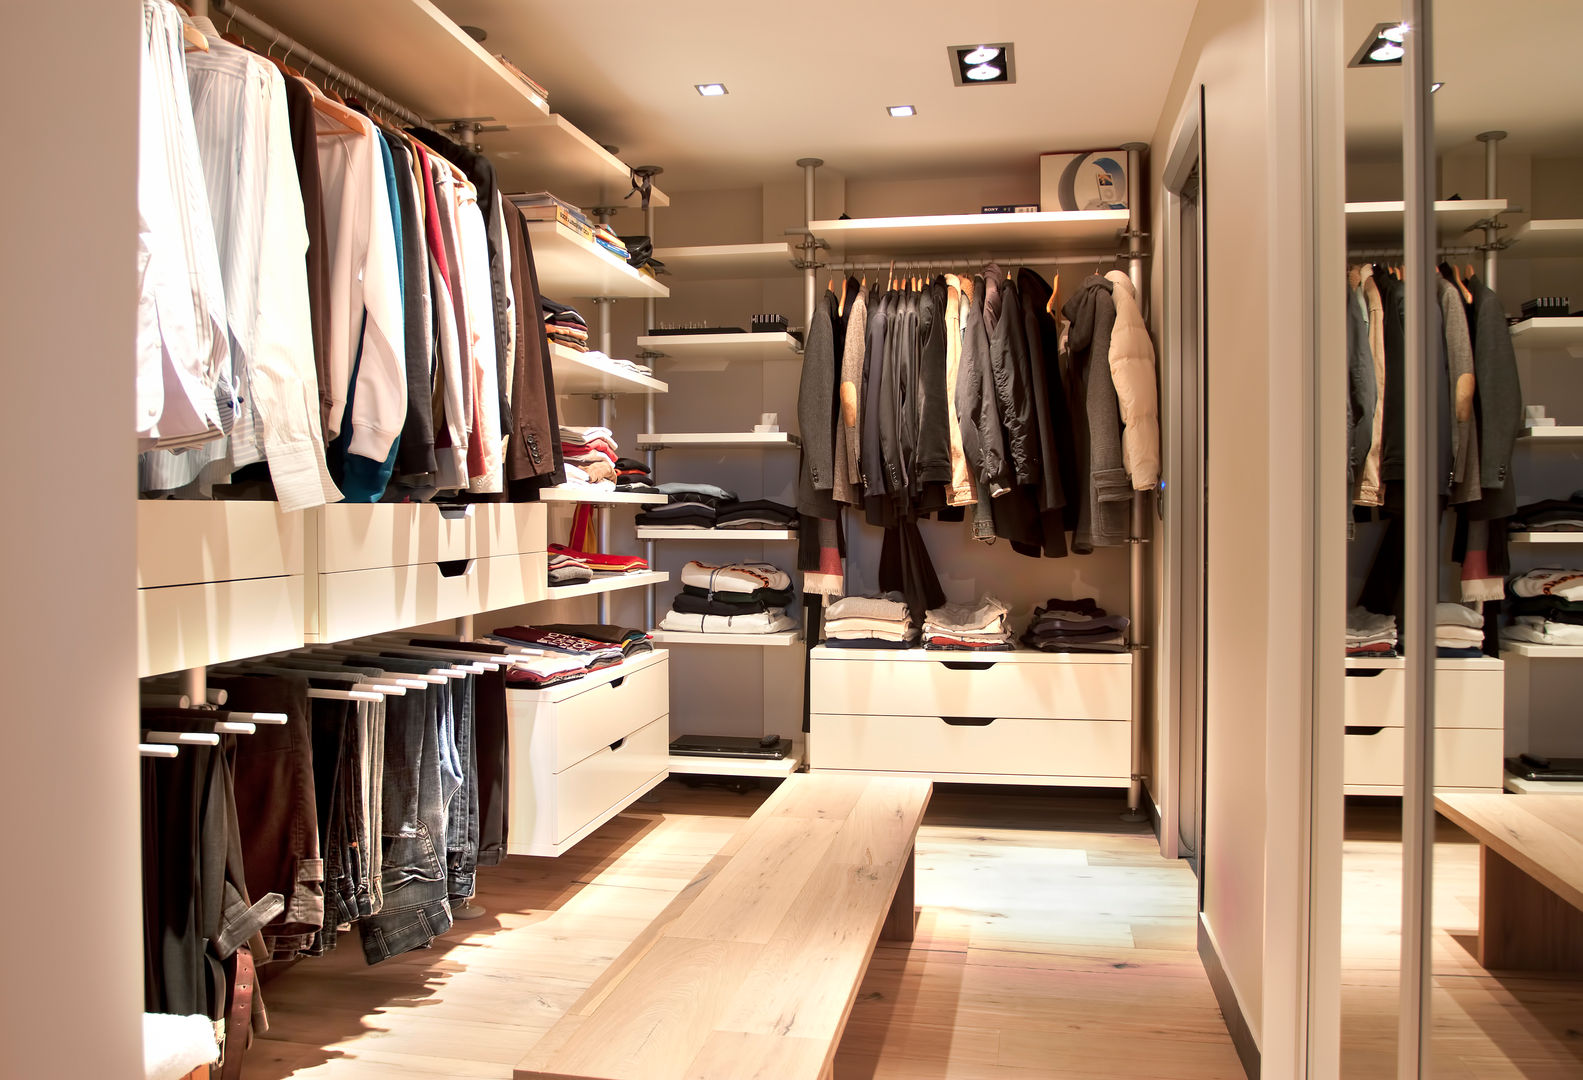 SAHİLEVLERİ PROJE, As Tasarım - Mimarlık As Tasarım - Mimarlık Closets modernos Guarda-roupas e cómodas